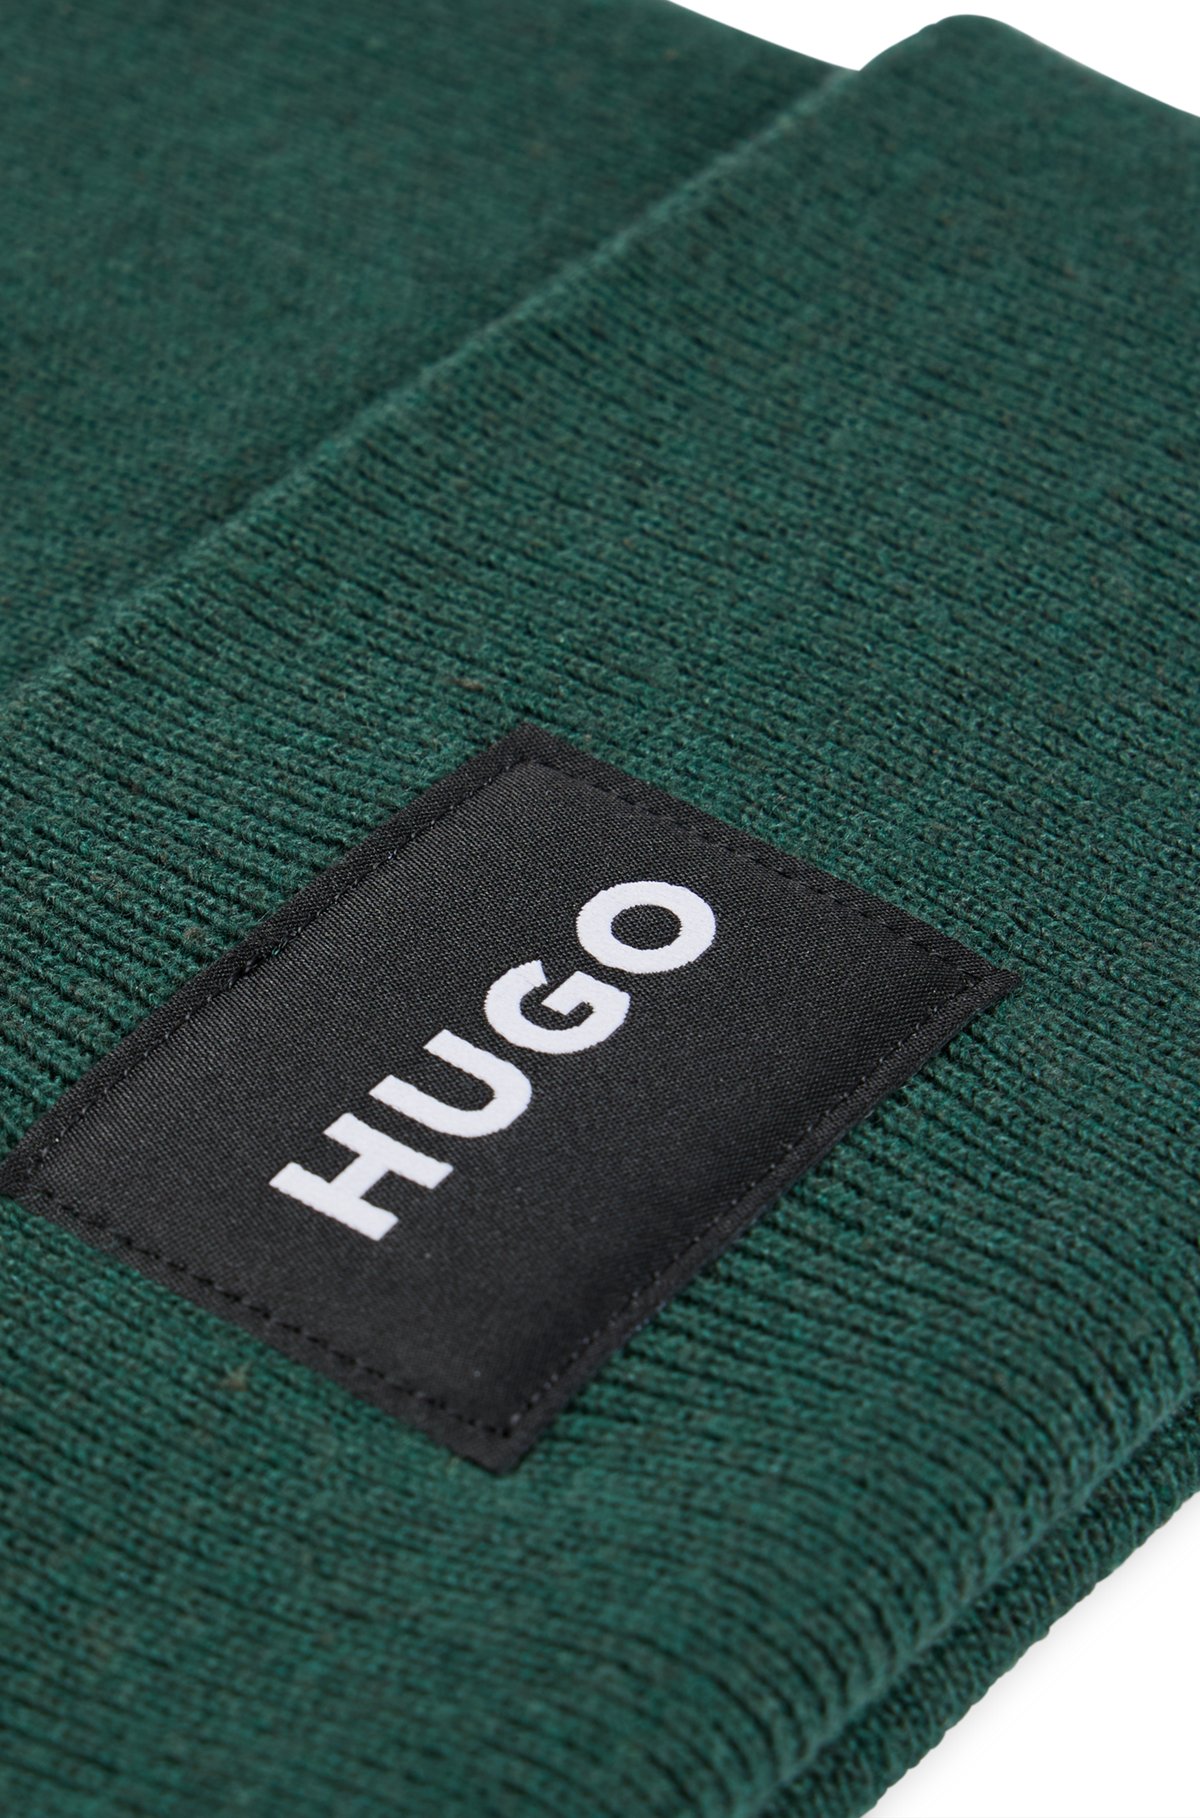 HUGO - Strickmütze mit Logo-Detail